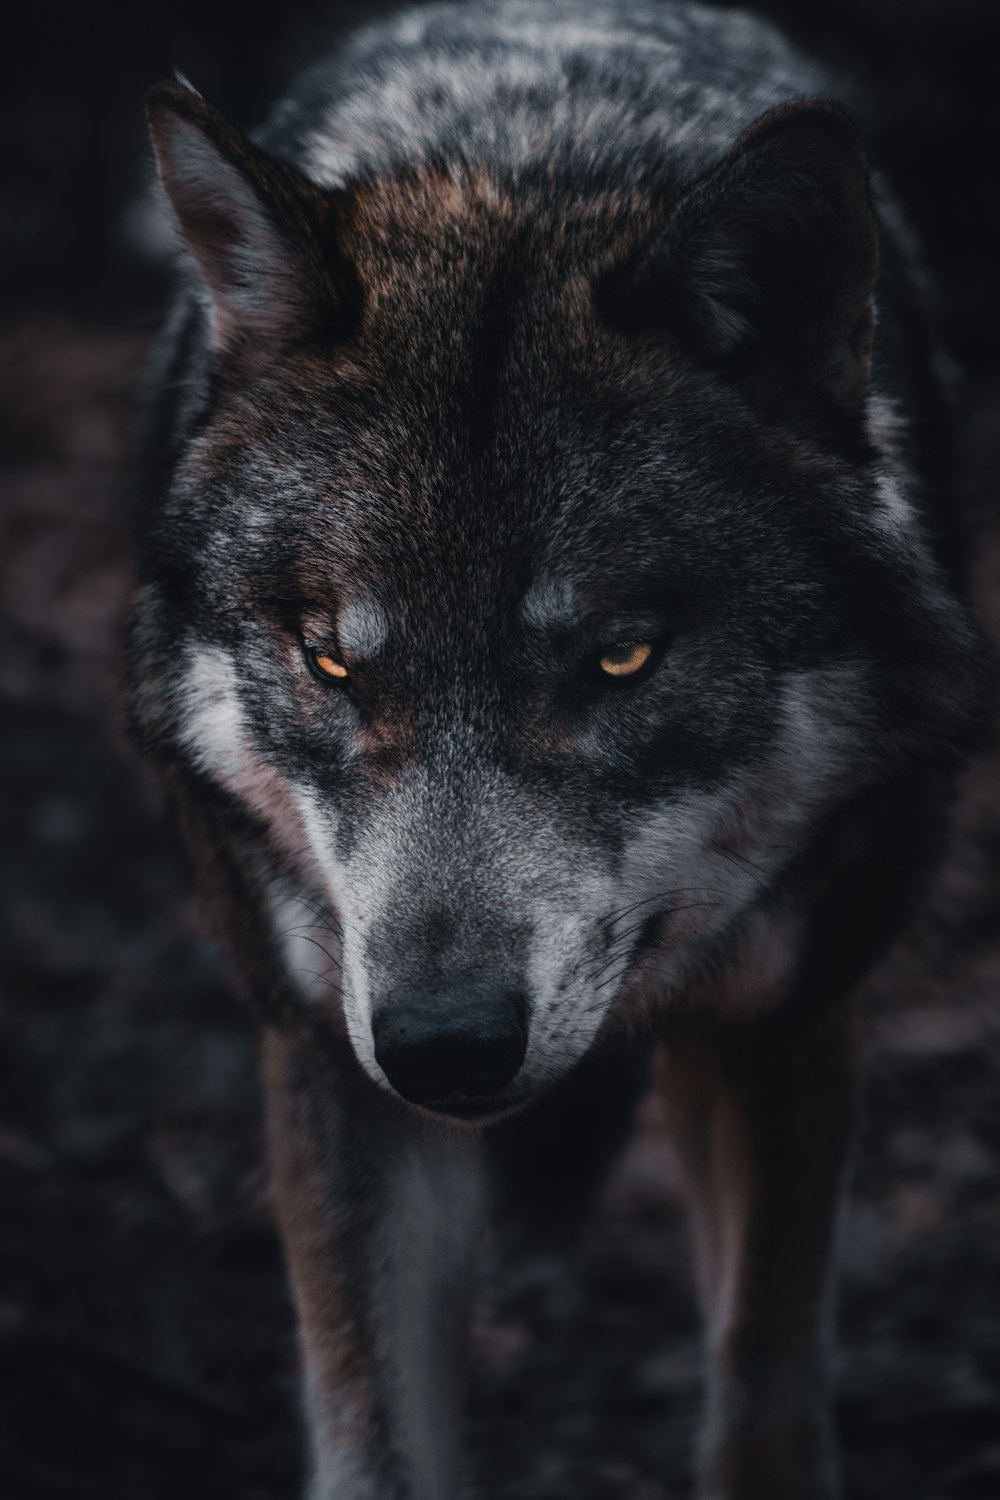 クローズ アップ写真で茶色と黒のオオカミの写真 Unsplashで見つける狼の無料写真